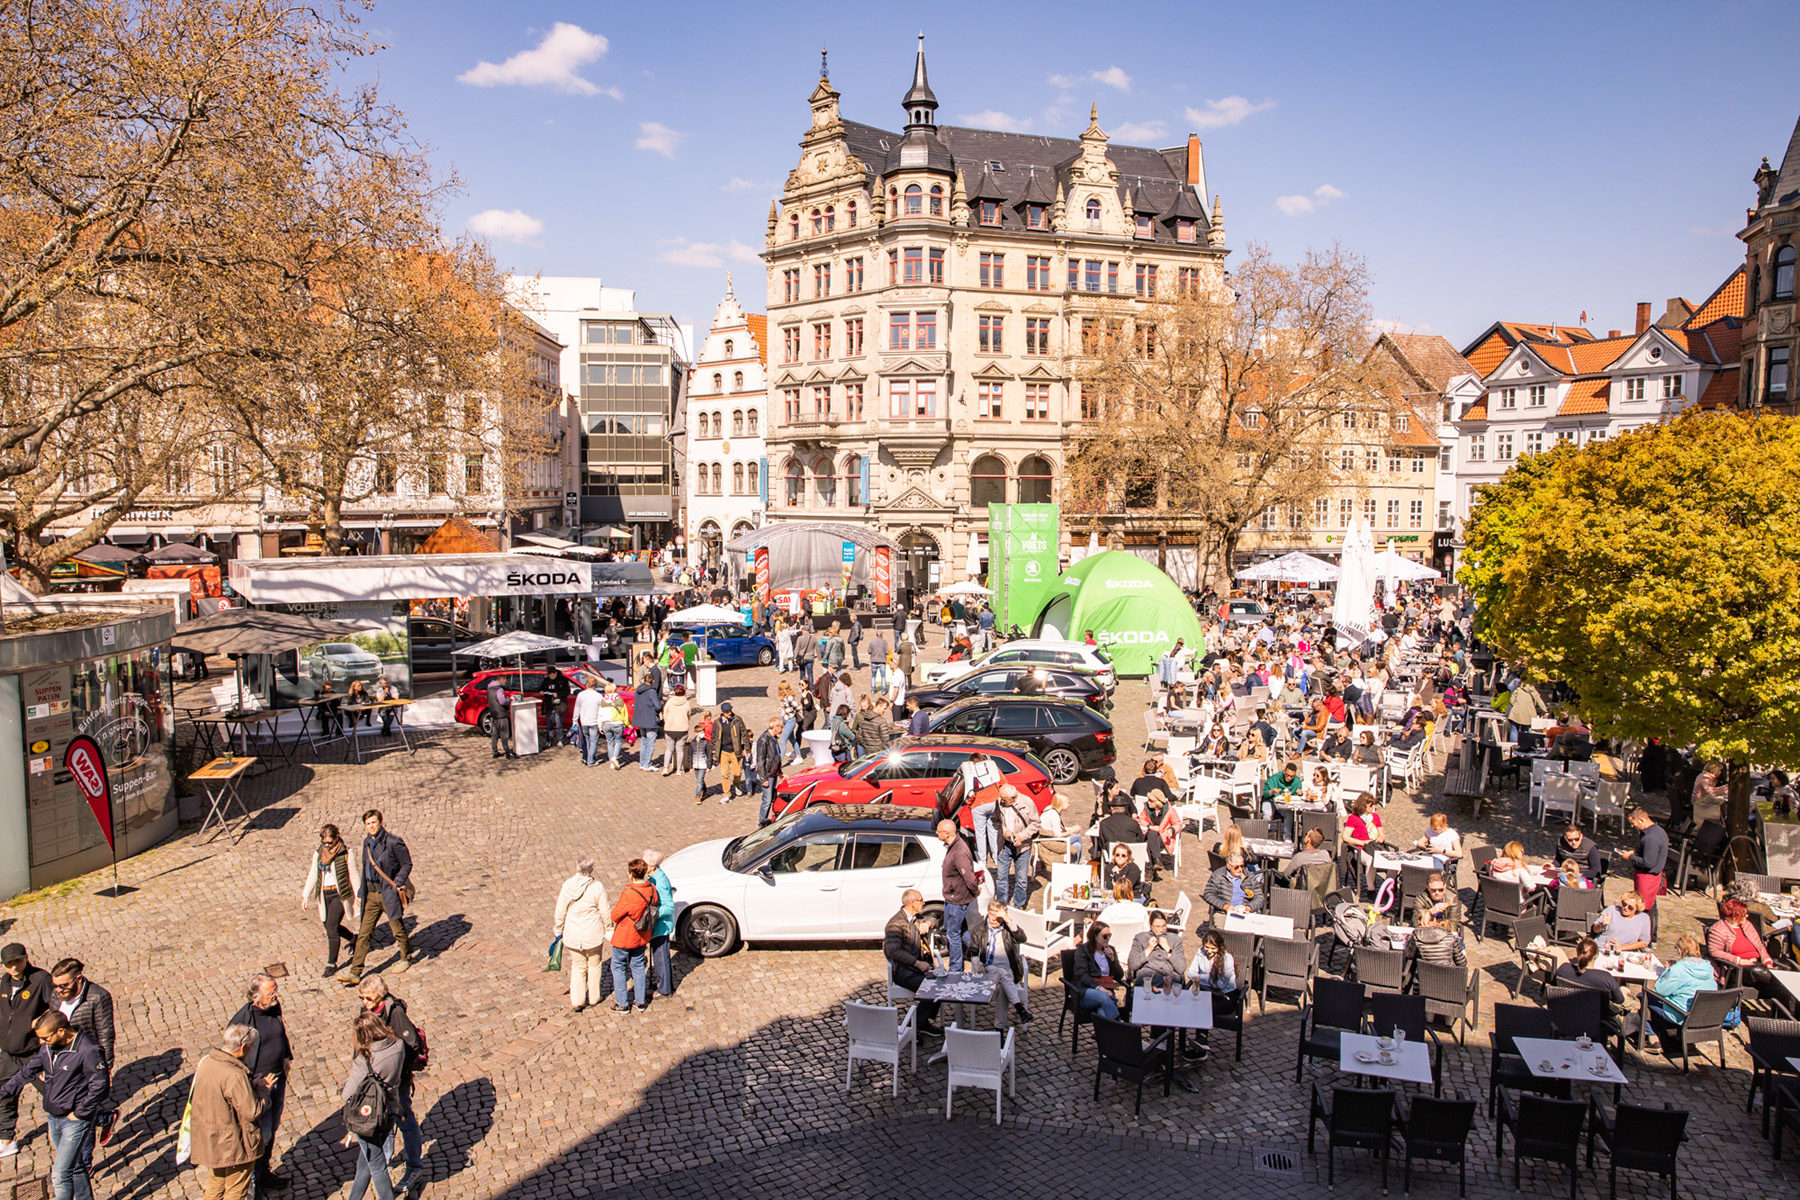 Der modeautofrühling brachte am 23. und 24. April die Vielfalt der Mobilität in die Braunschweiger Innenstadt. (Wird bei Klick vergrößert)